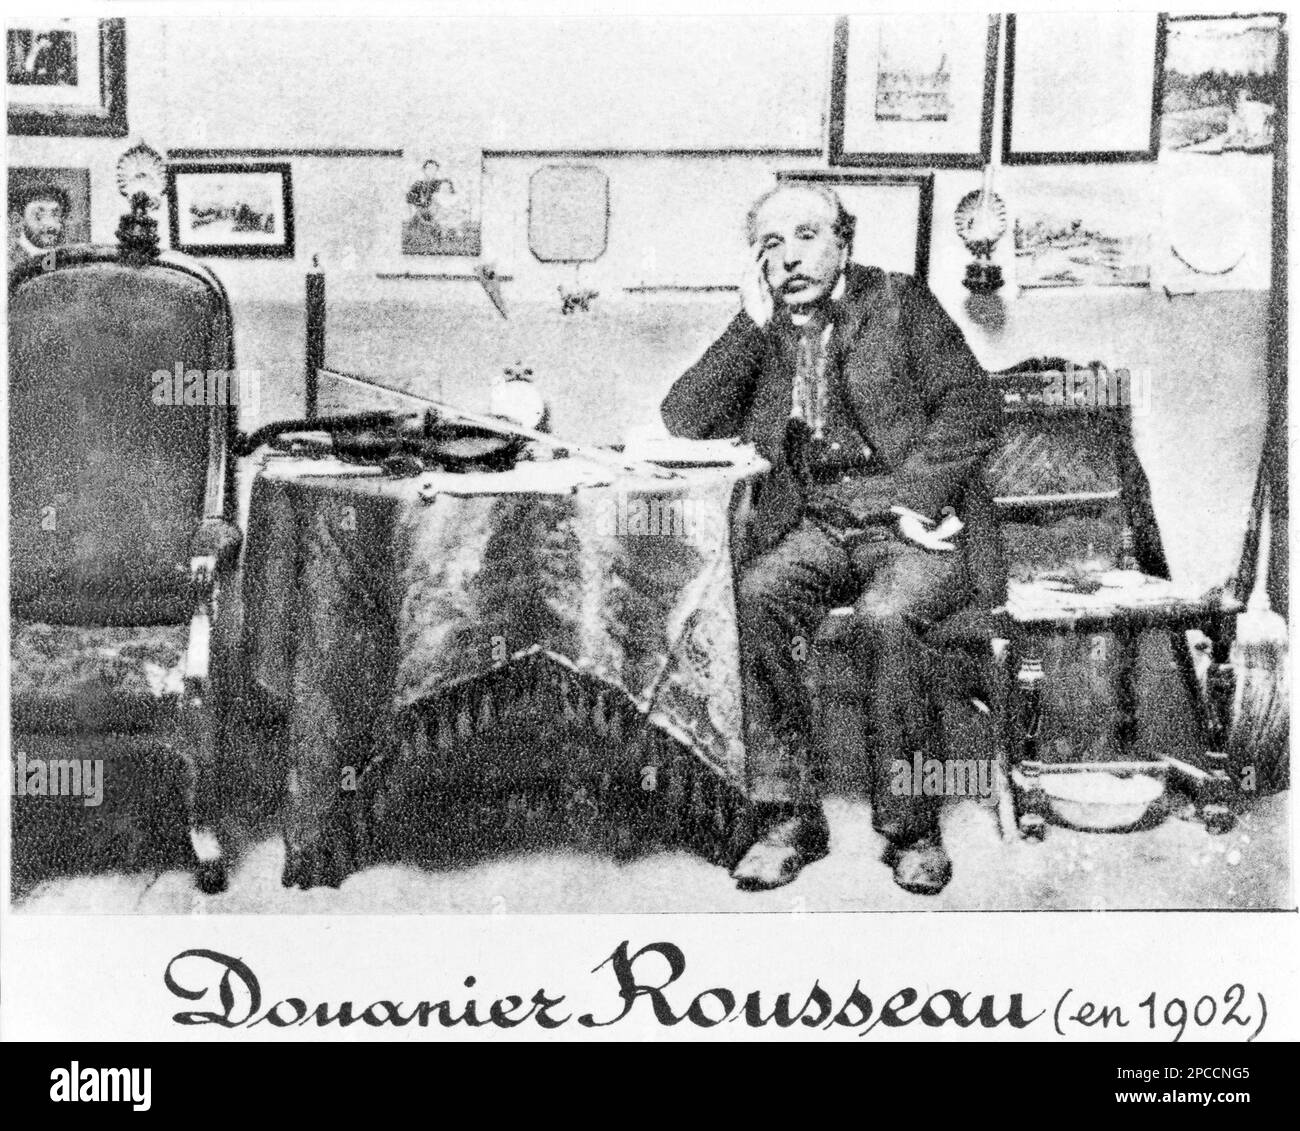 1902 , FRANKREICH : der gefeierte französische Maler DOUANIER ROUSSEAU ( Henri Julien Felix Rousseau , 1844 - 1910 ). War ein französischer Post-Impressionist-Maler auf naive oder primitive Weise. Nach seinem Dienstort ist er auch als Le Douanier ( Zollbeamter ) bekannt. - POST IMPRESSIONISM - IMPRESSIONISTA - NAIF - POST IMPRESSIONISMO - ART - ARTE - PITTURA - Malen - PITTORE - Künstler - Artista - Portrait - ritratto - Älterer Mann - Uomo anziano vecchio - ARTE - ARTS - Violino - DOGANIERE -- Archivio Stockfoto